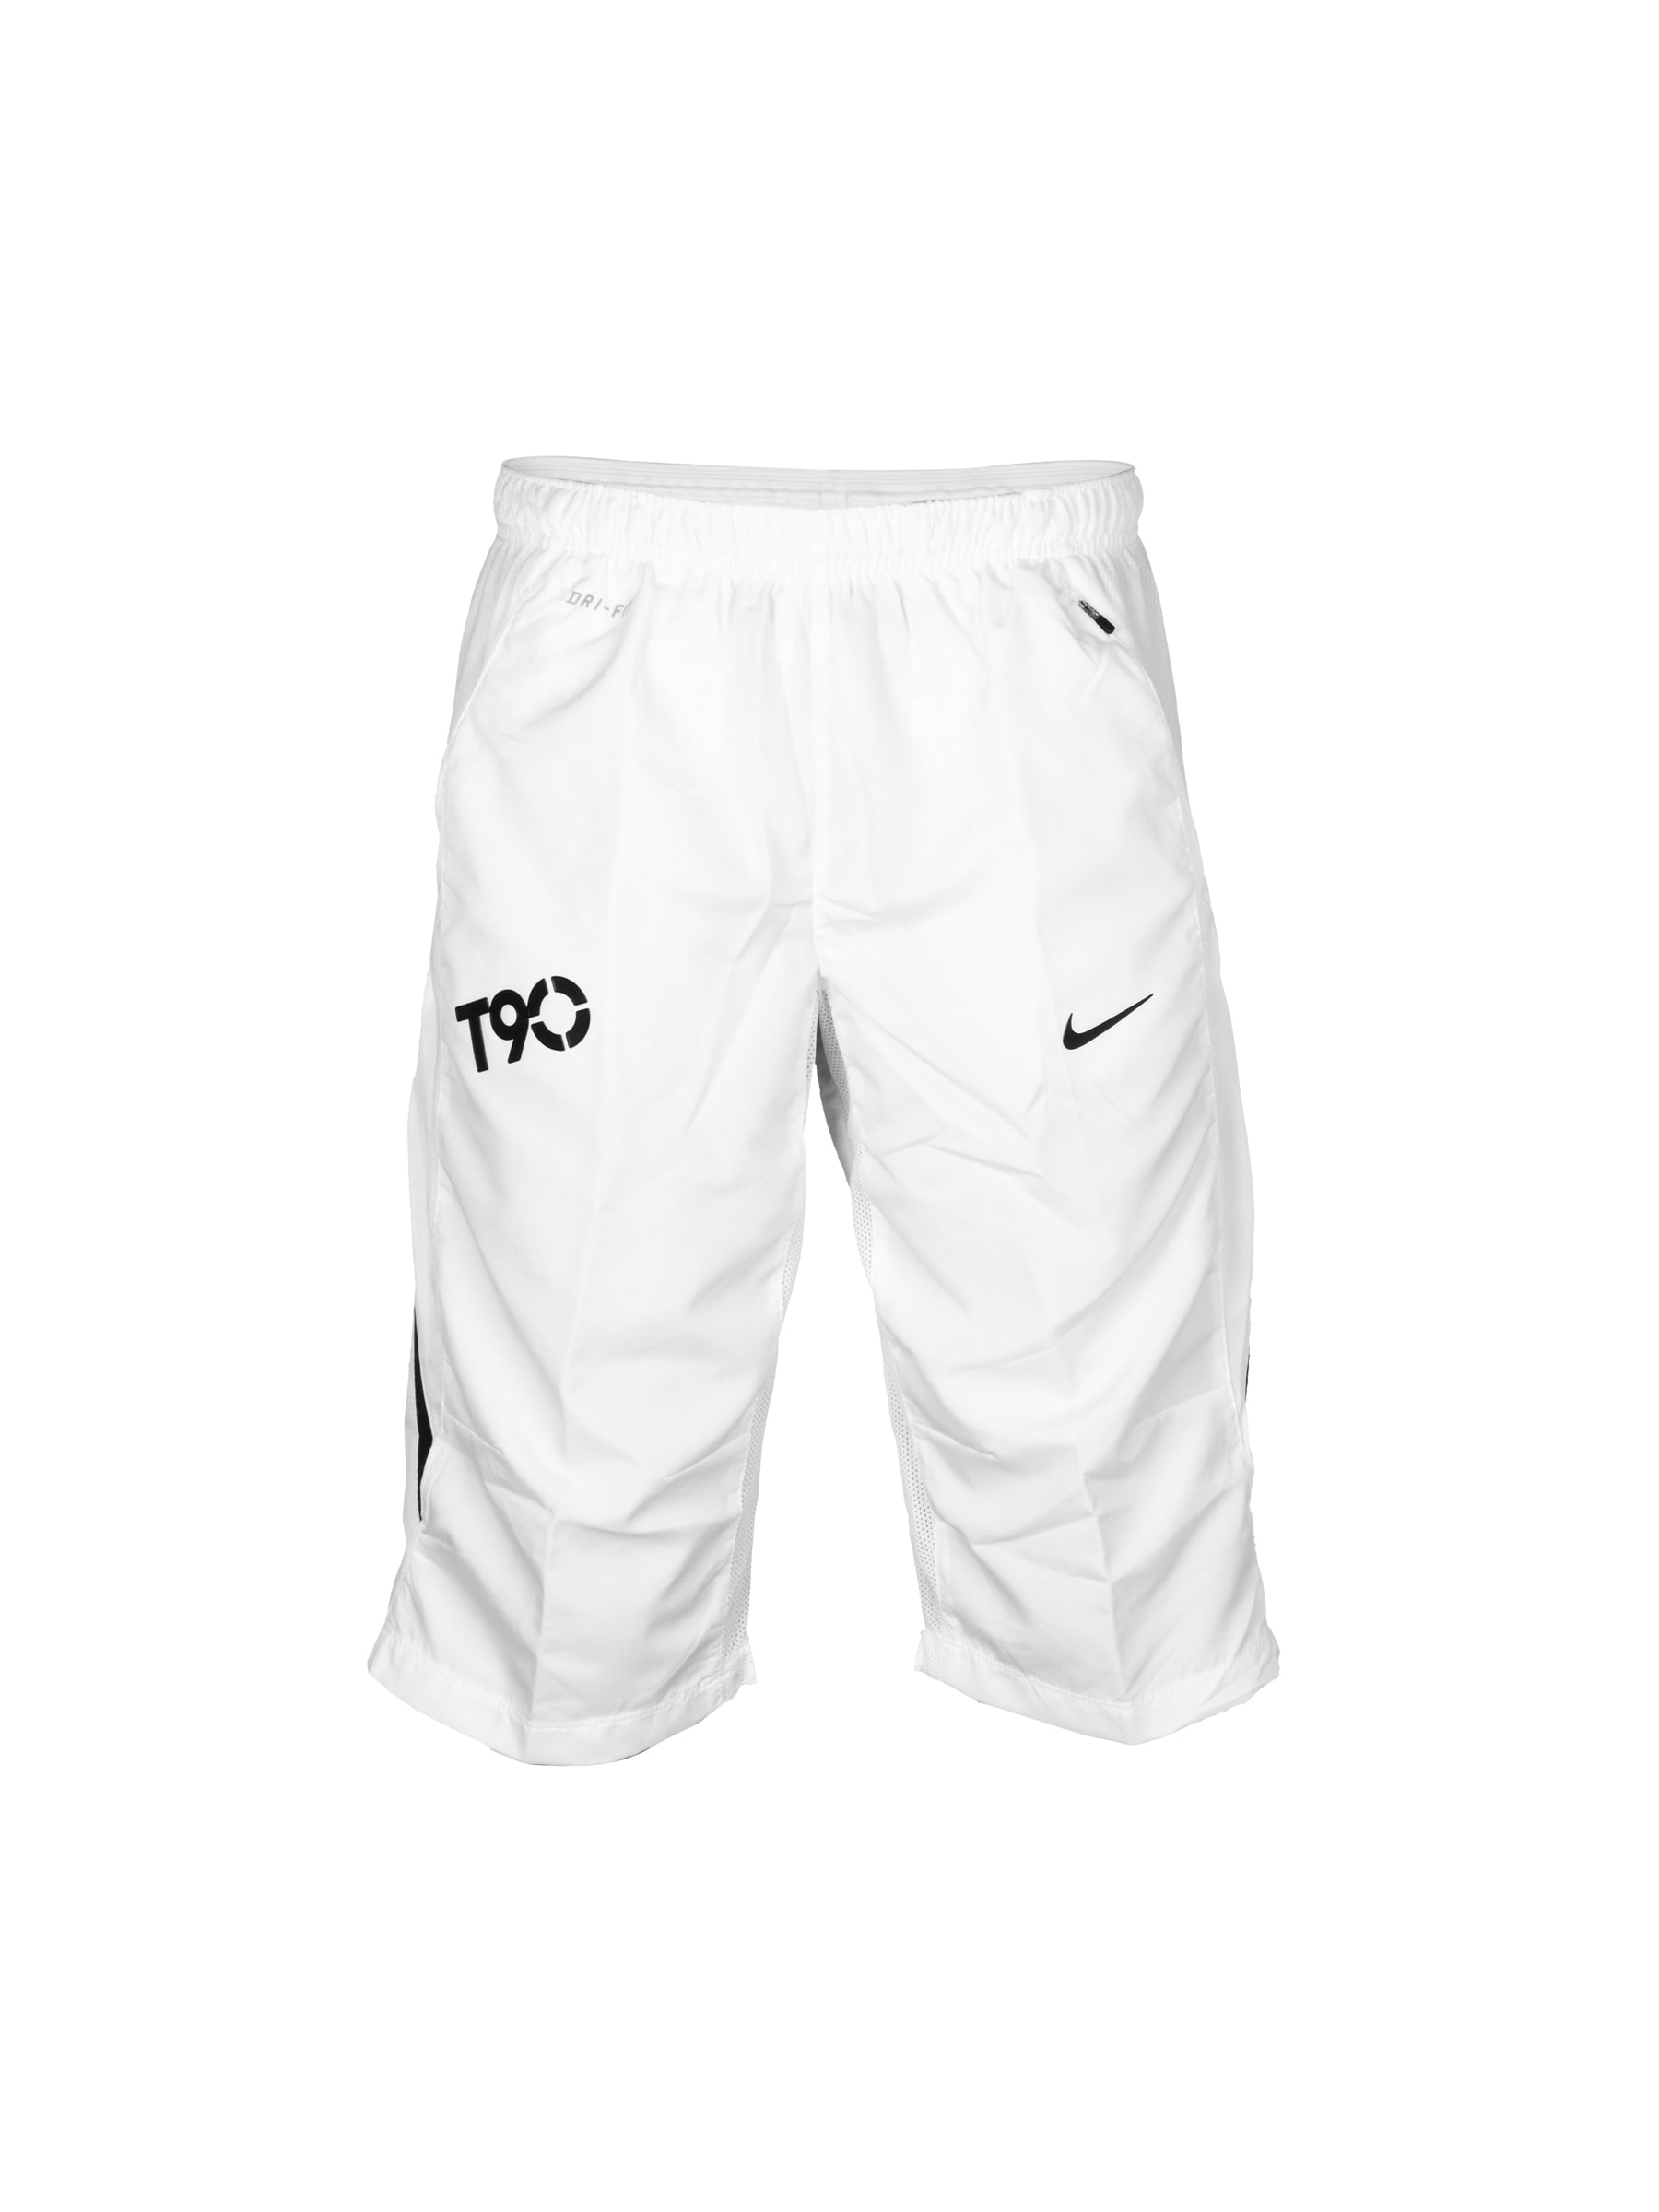 Nike Men's AS T90 3/4 WO White Shorts